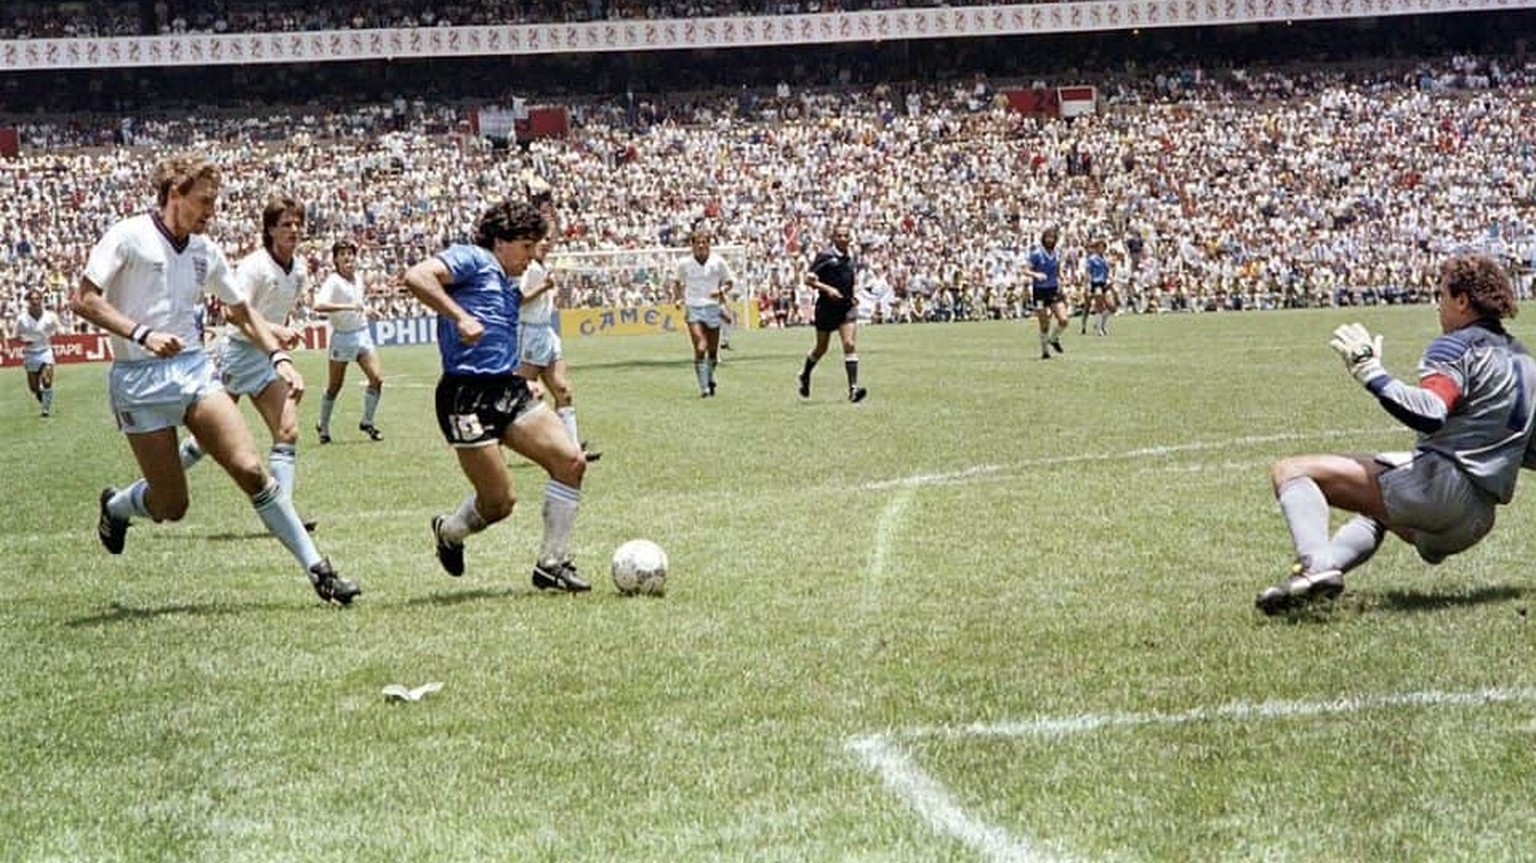 Gleich schlägt es ein in Englands Tor: Diego Maradona erzielt 1986 das Tor des Jahrhunderts.